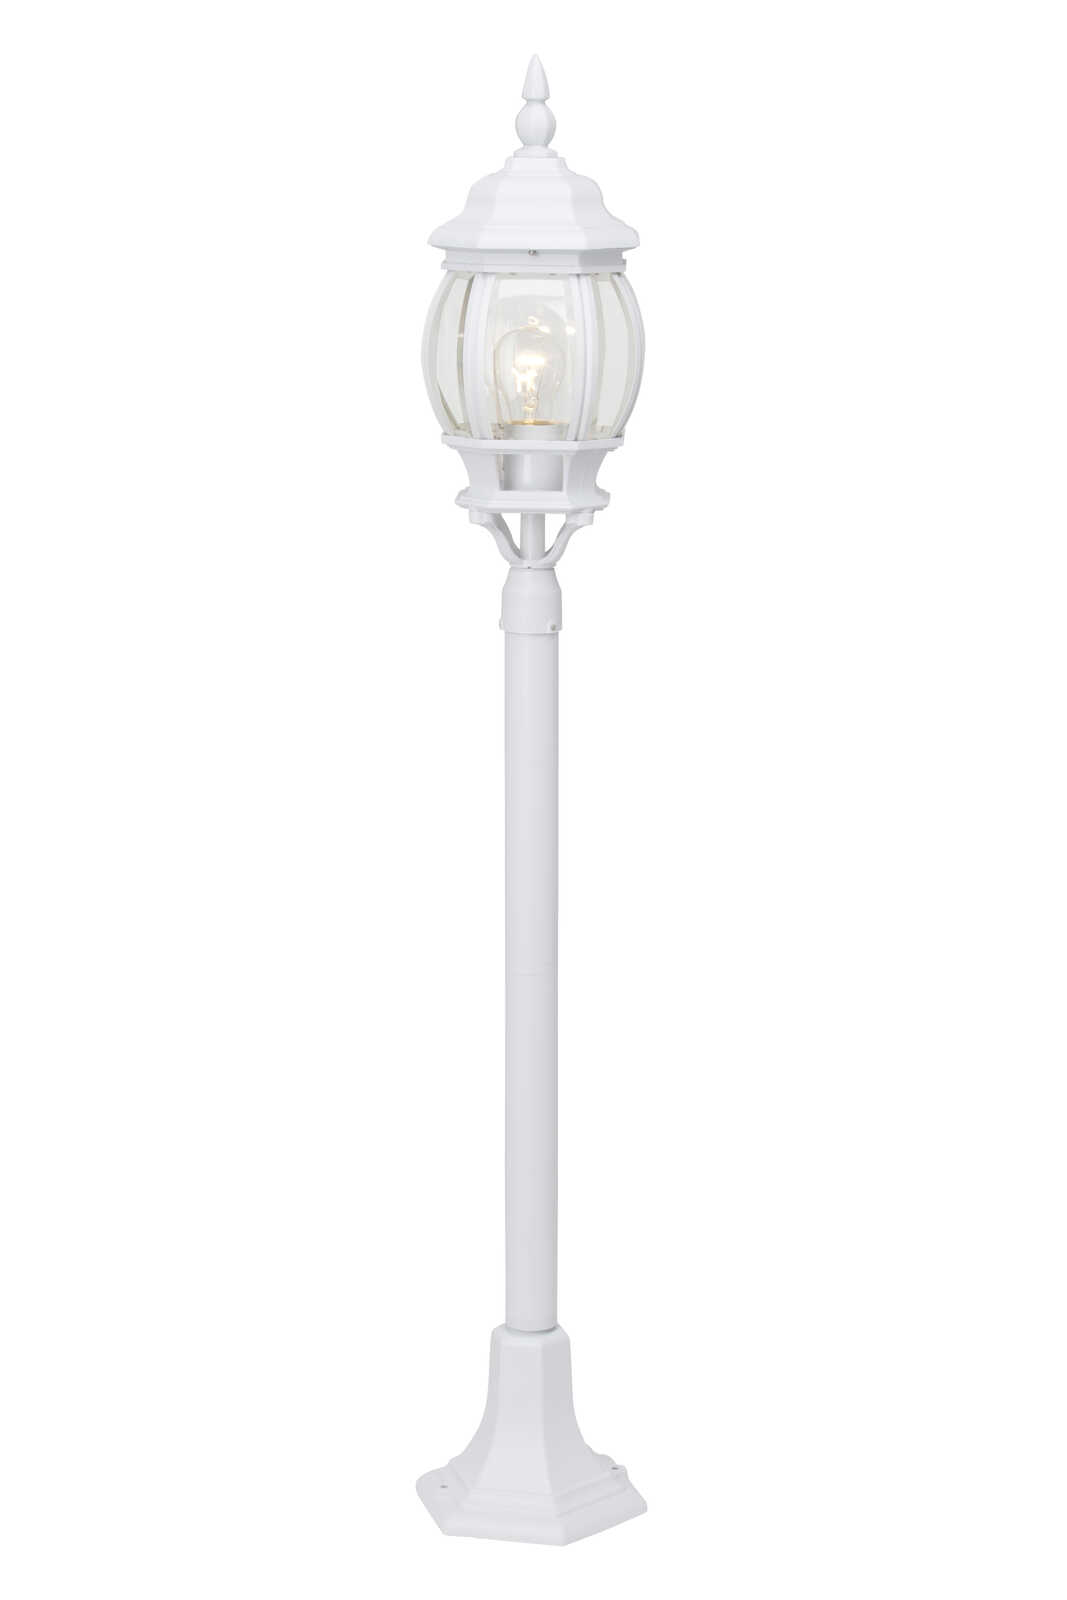             Lámpara de pie de exterior de cristal - John 1 - Blanco
        